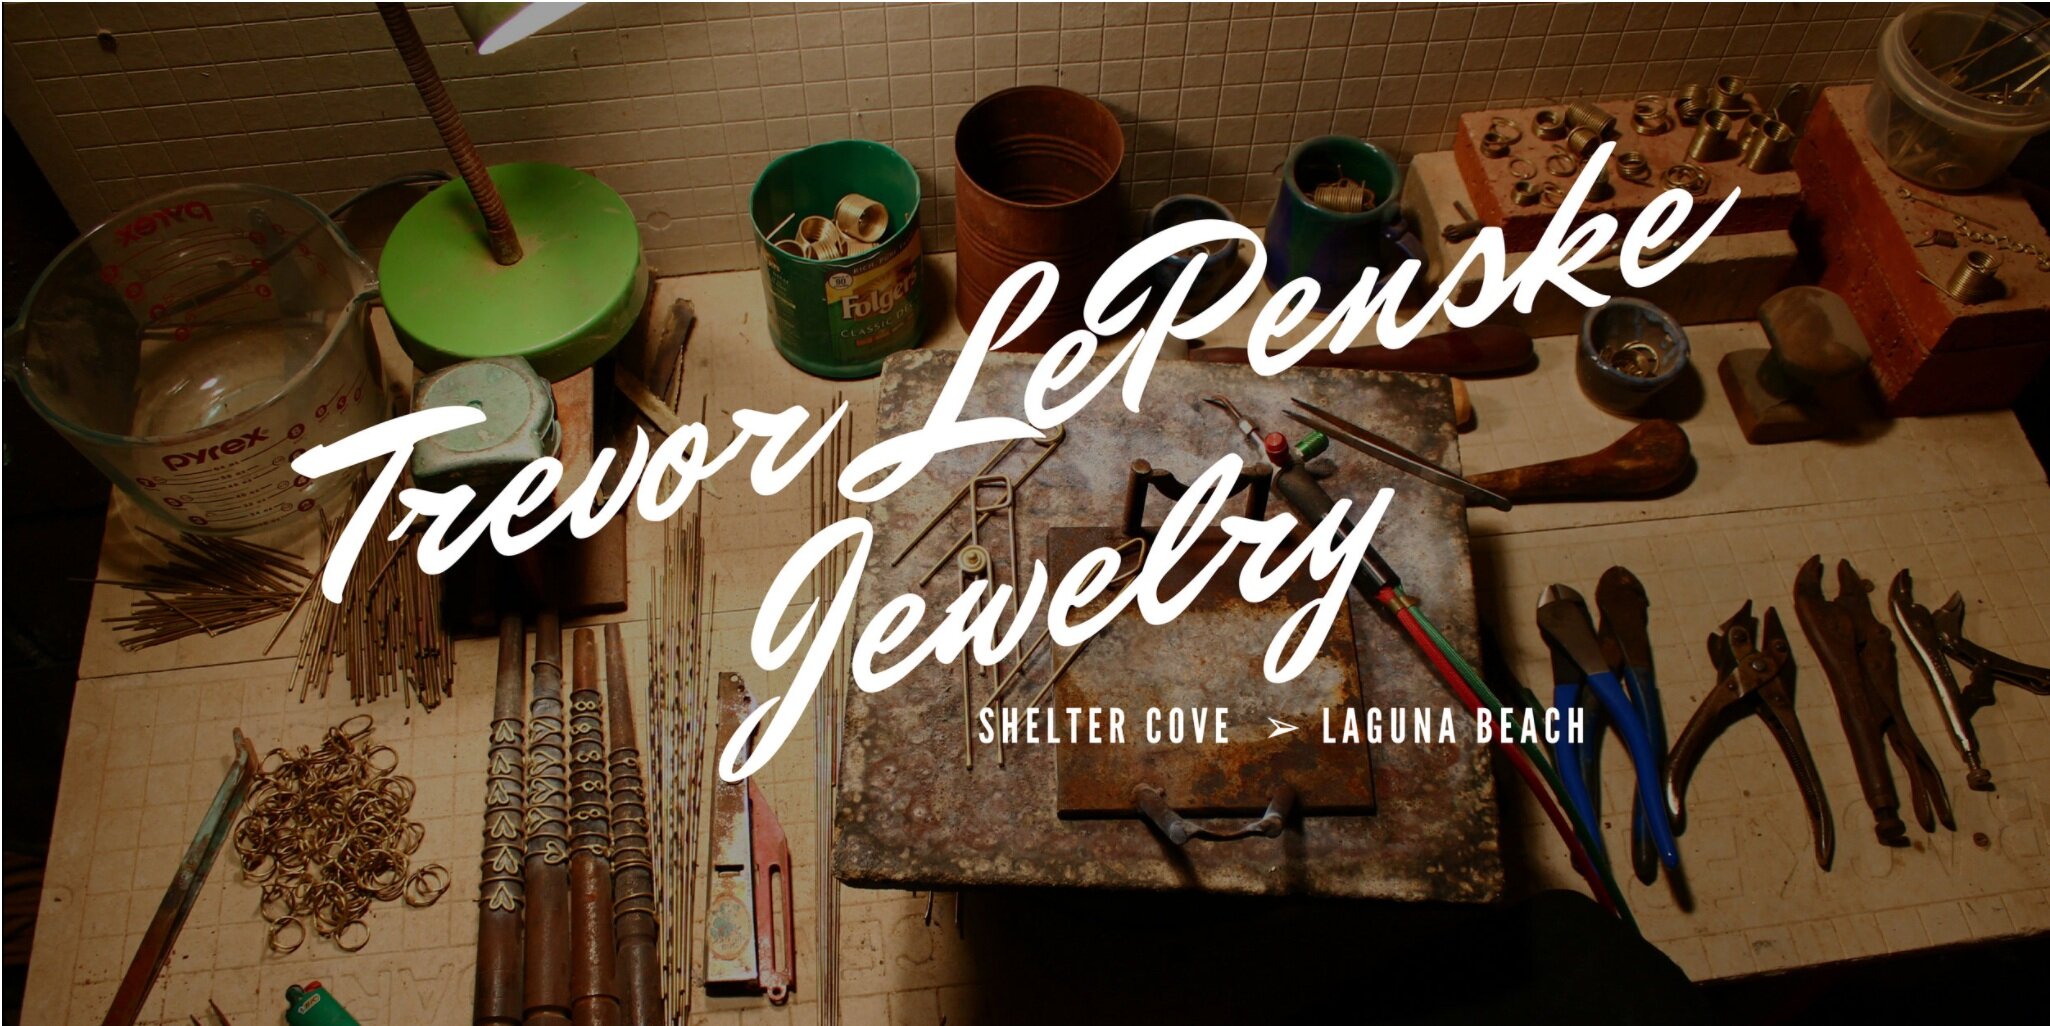 Trevor LePenske Jewelry